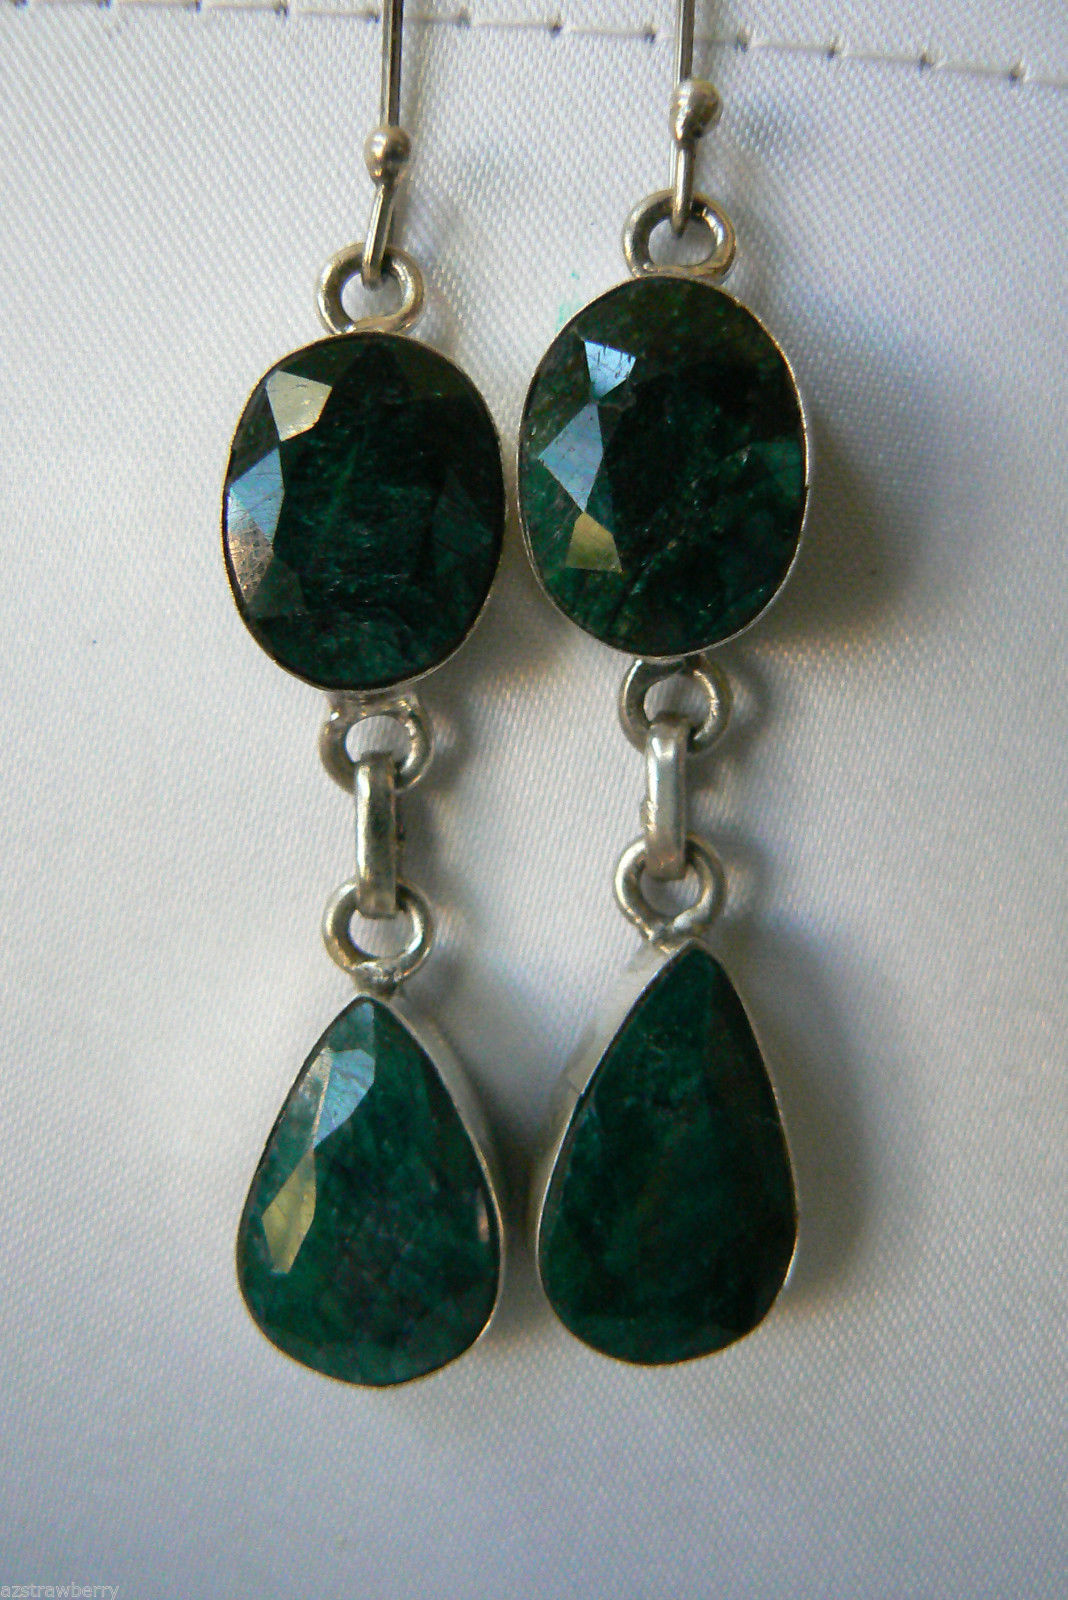 Green SeraphiniteTeardrop in Sterling Silver 925 Earrings - $60.00